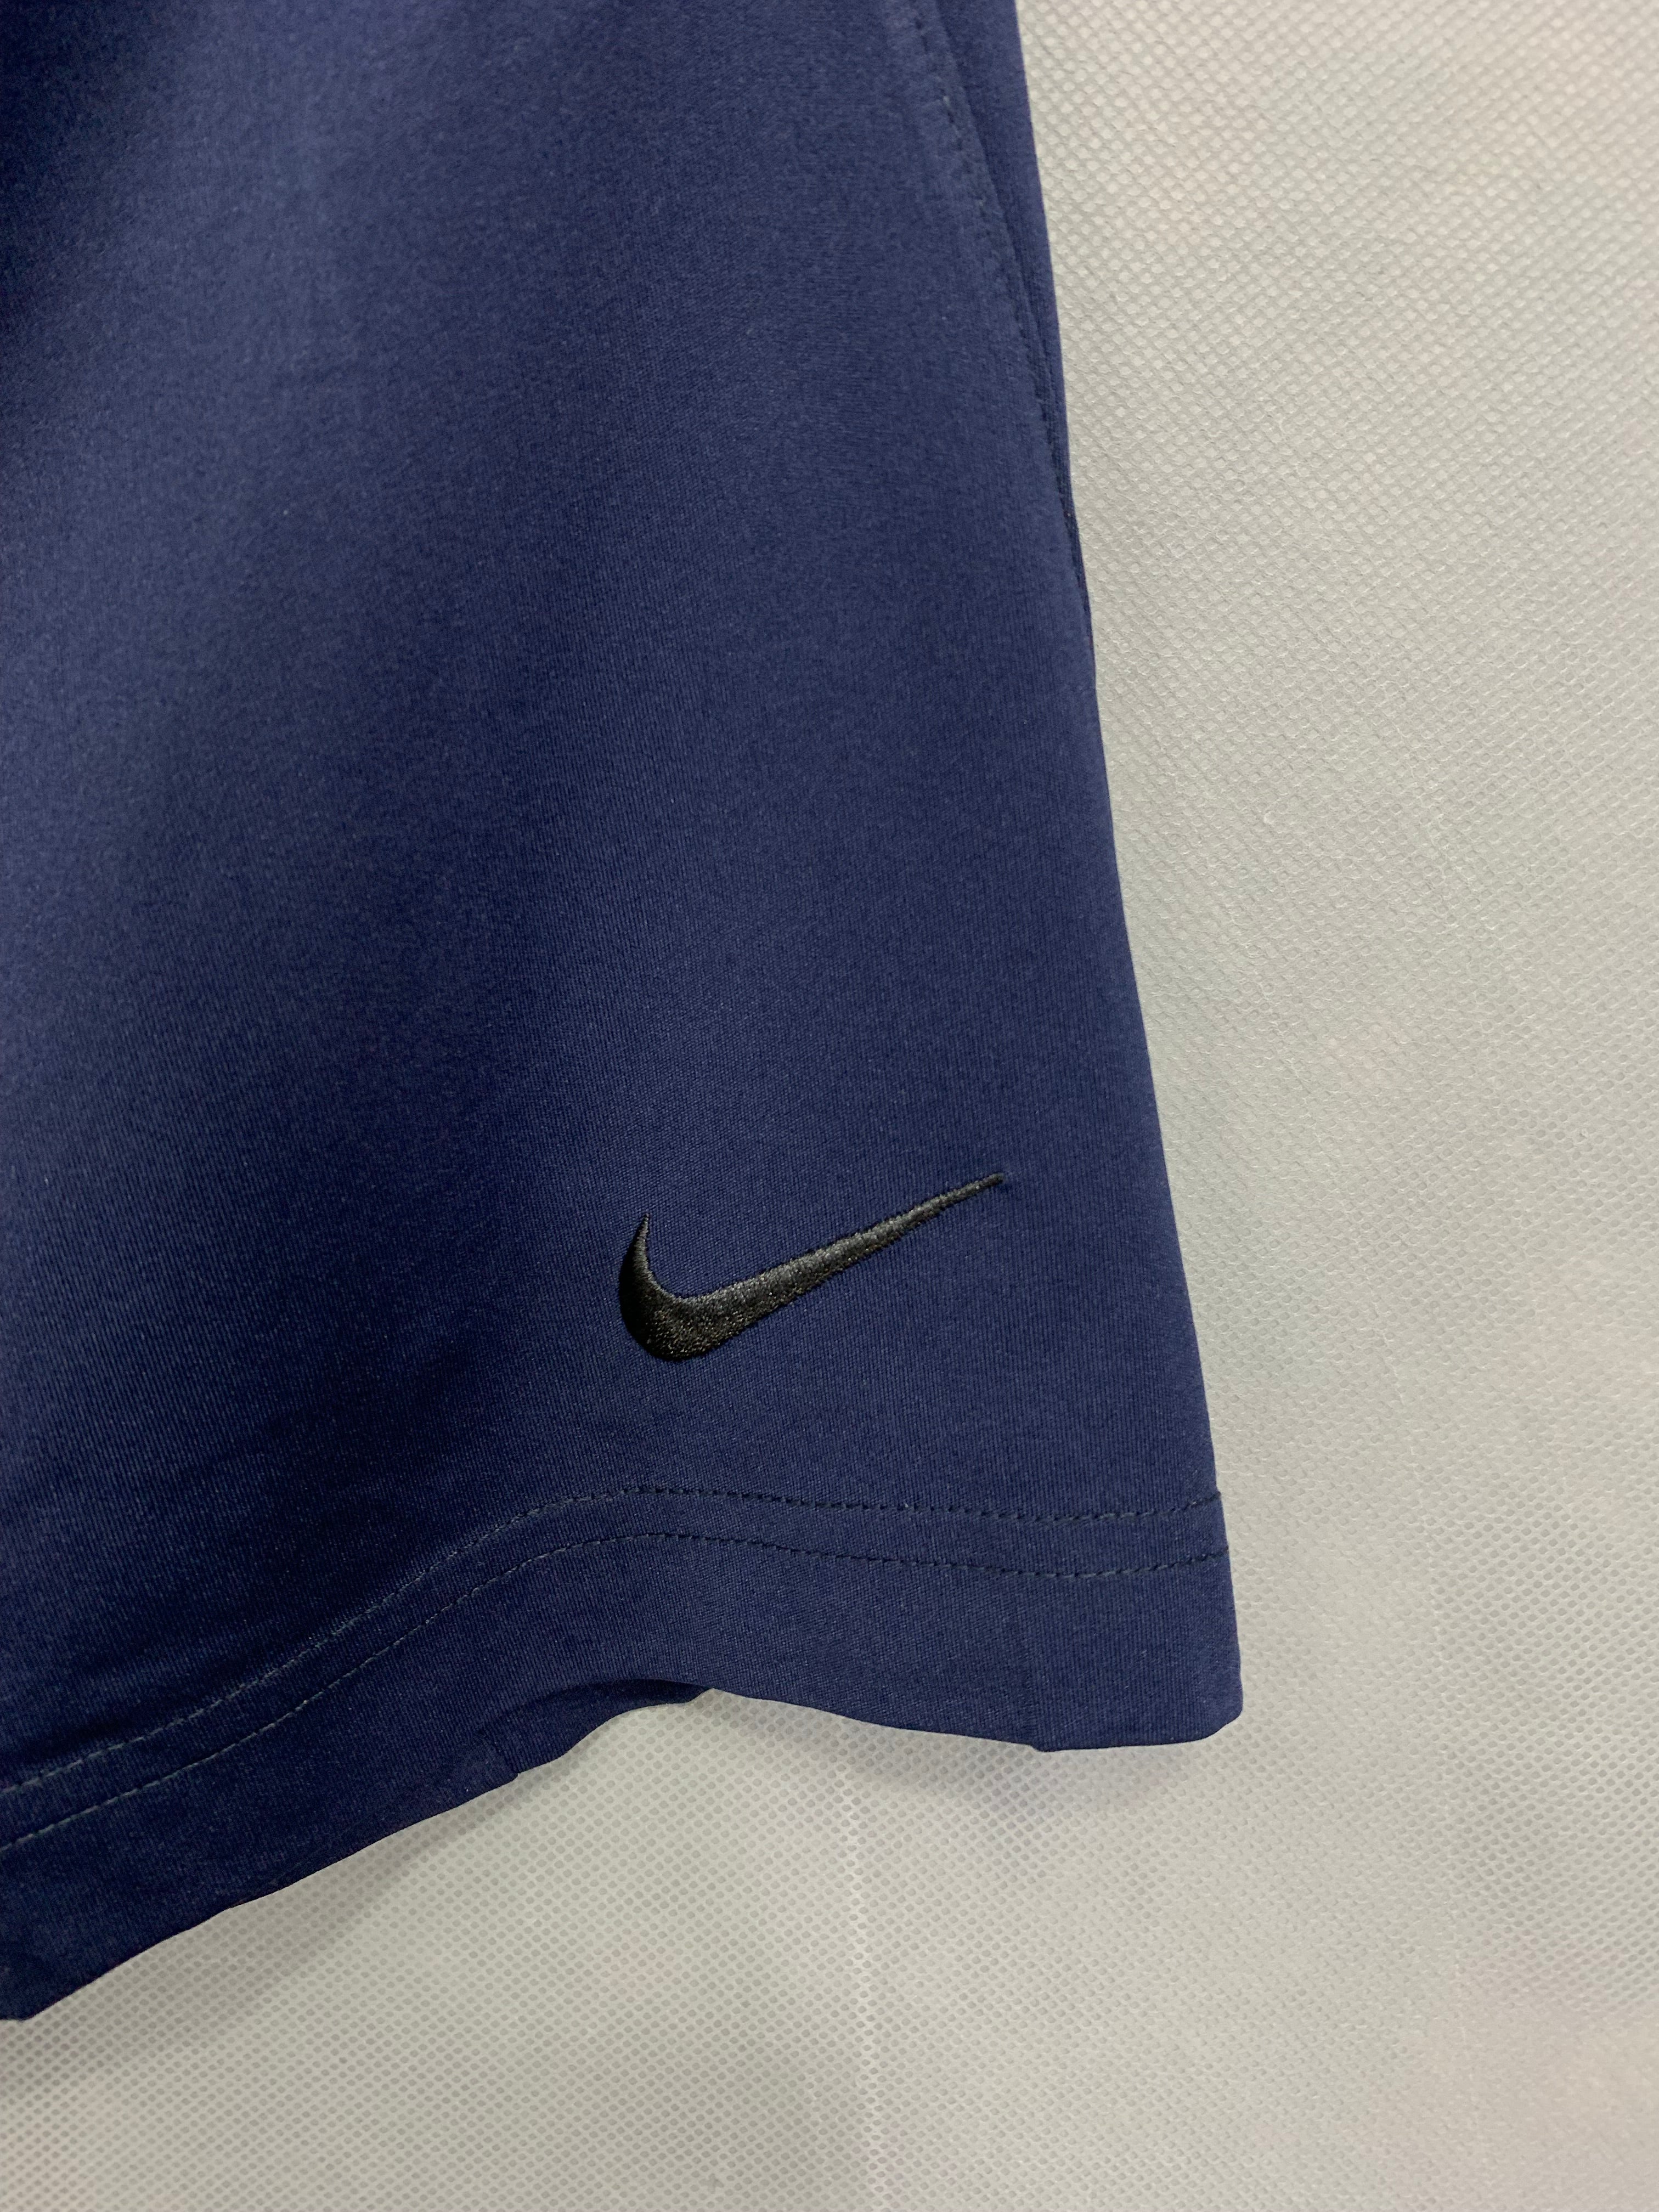 Nike Dir Fit Branded Original Sports Short For Men